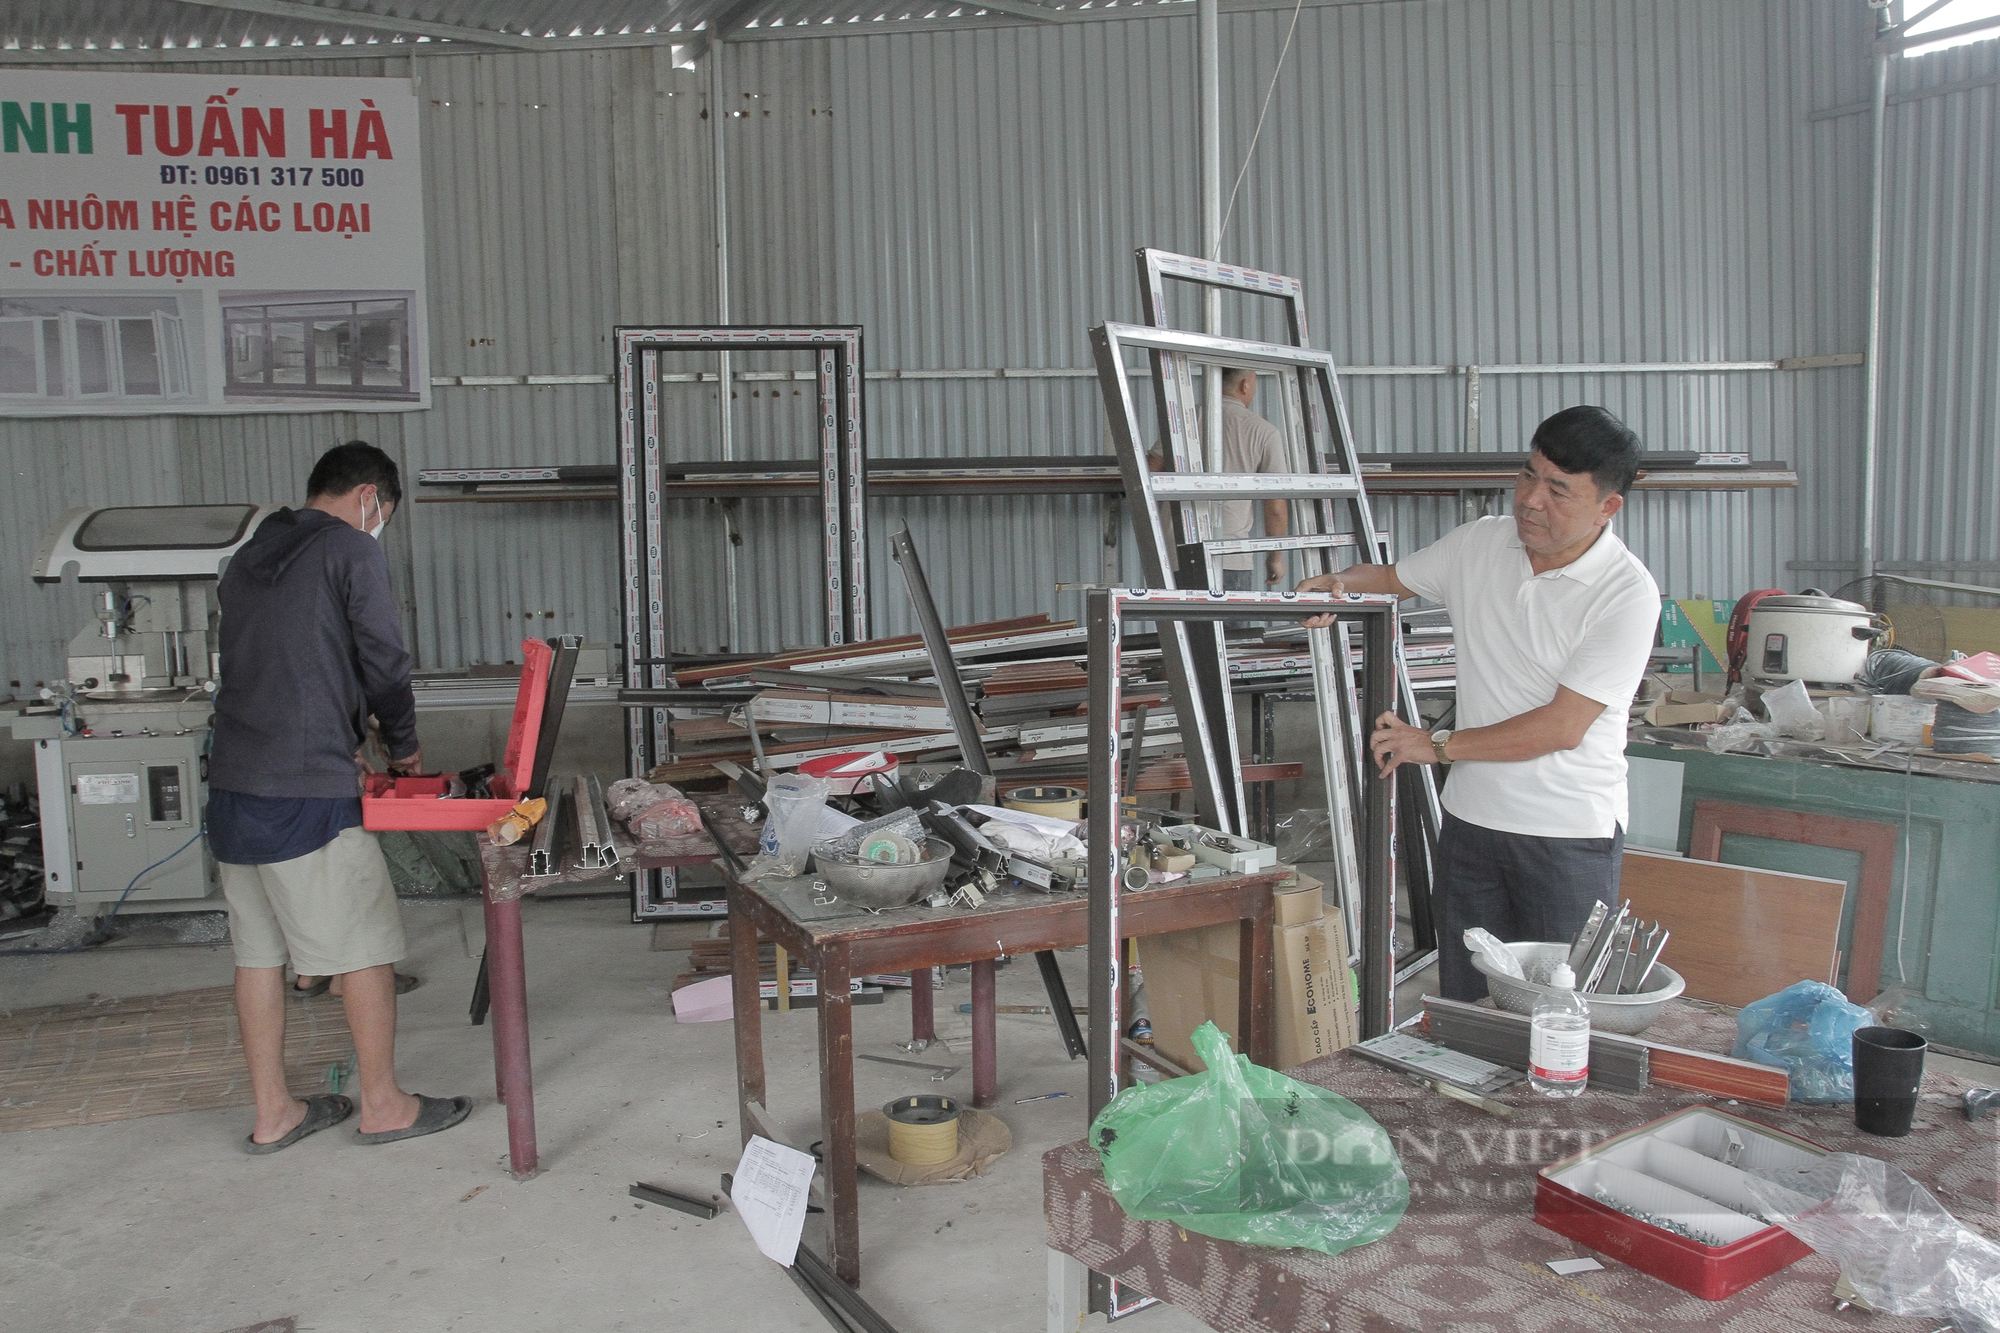 Ngoài chăn nuôi gà gia công, gia đình anh Tùng còn làm xây dựng và mở xưởng sản xuất nhôm kính. (Ảnh: Hà Thanh)